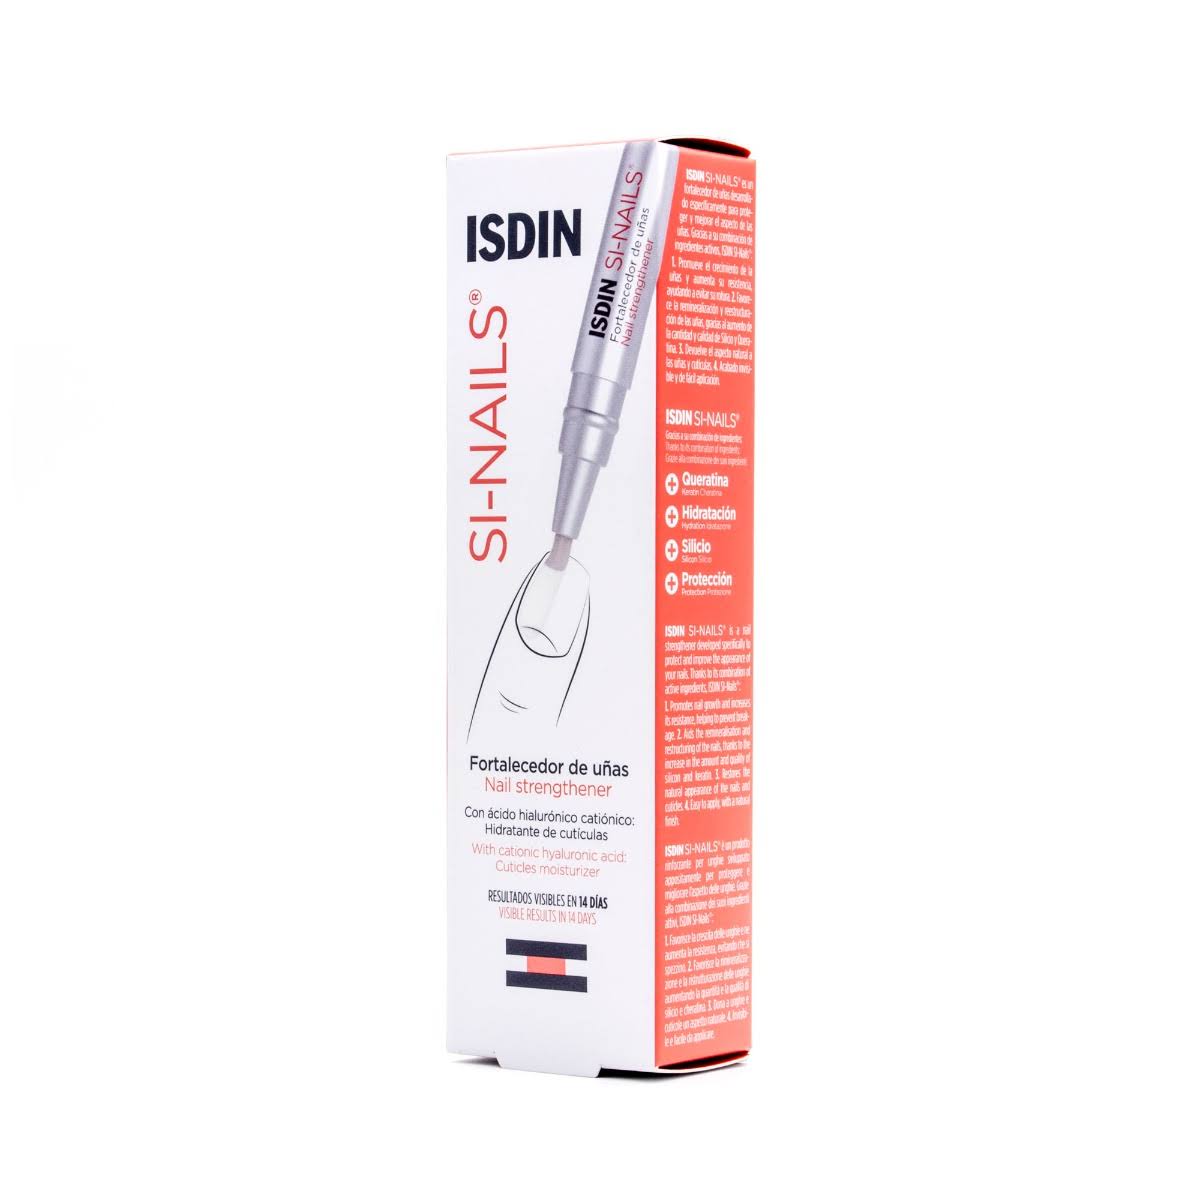 ISDIN Si-Nails - Las Colinas Dermatology